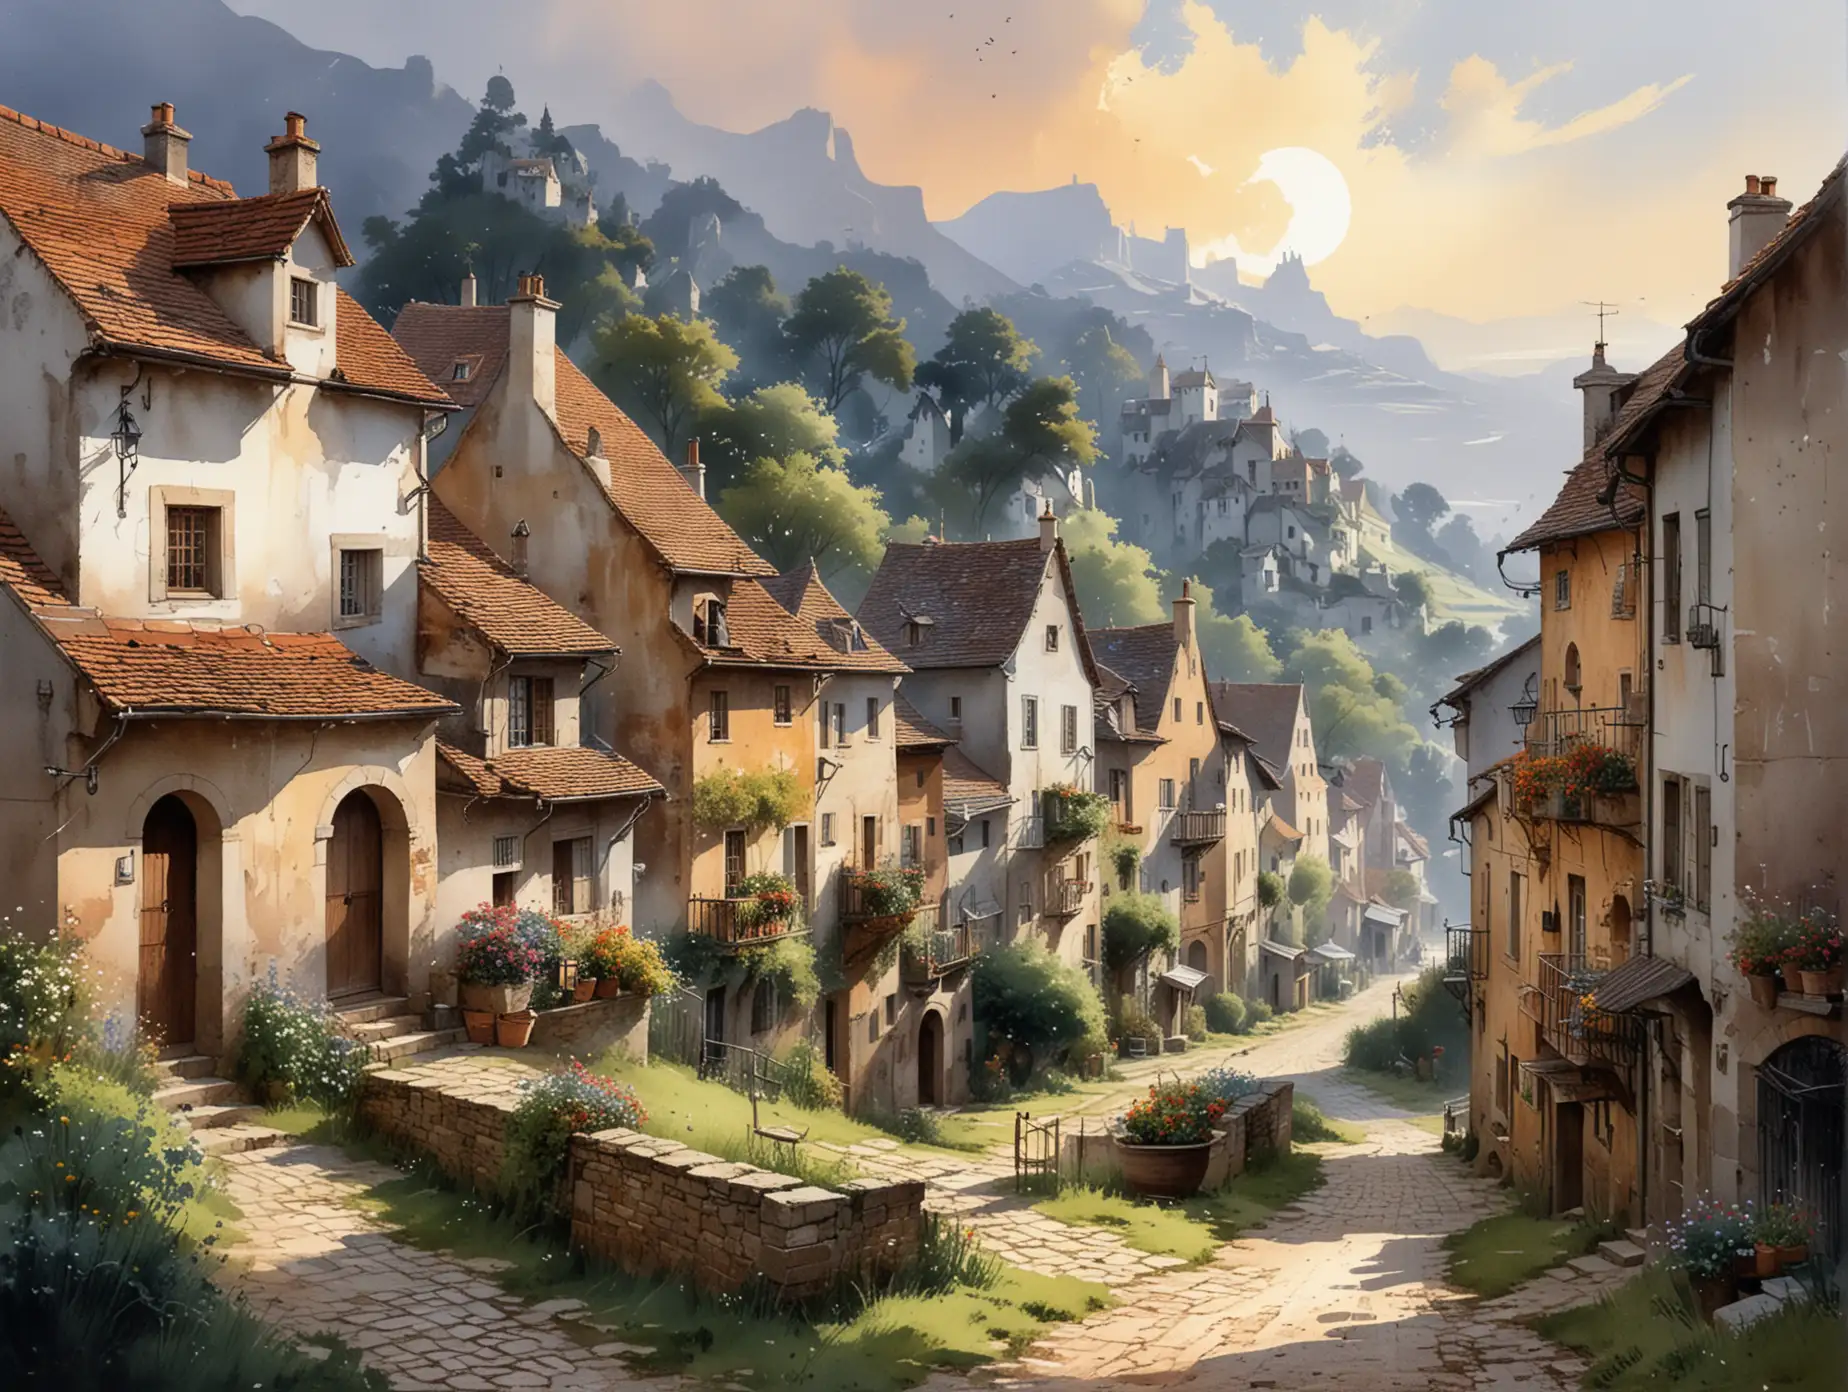 Dreamcore Serene Village by Thomas Schaller